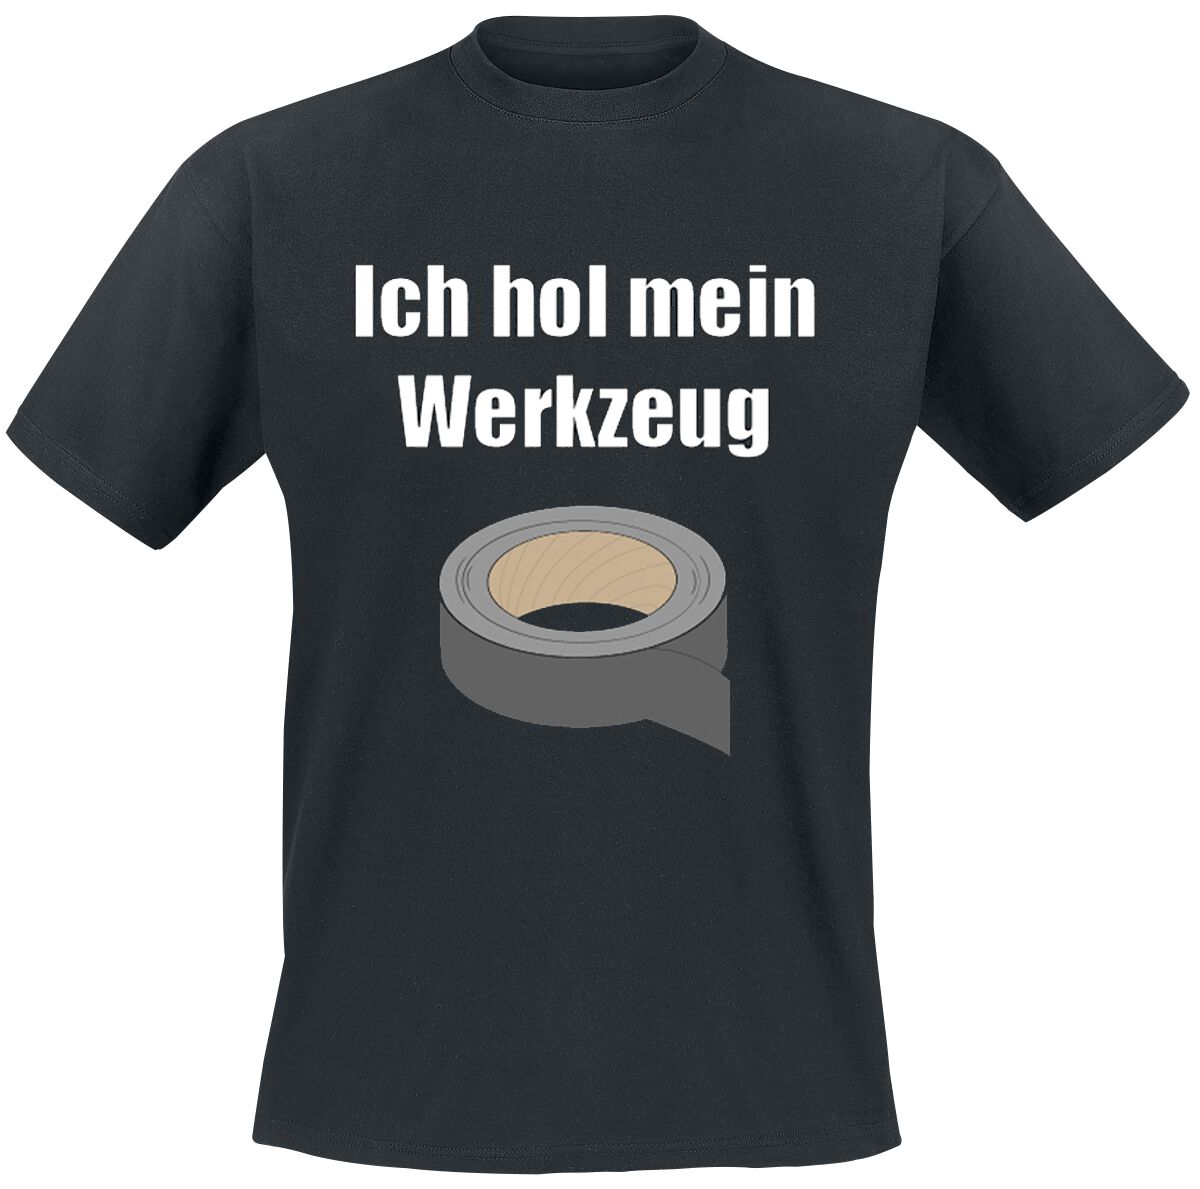 Beruf & Karriere T-Shirt - Ich hol mein Werkzeug - S bis 4XL - für Männer - Größe 4XL - schwarz